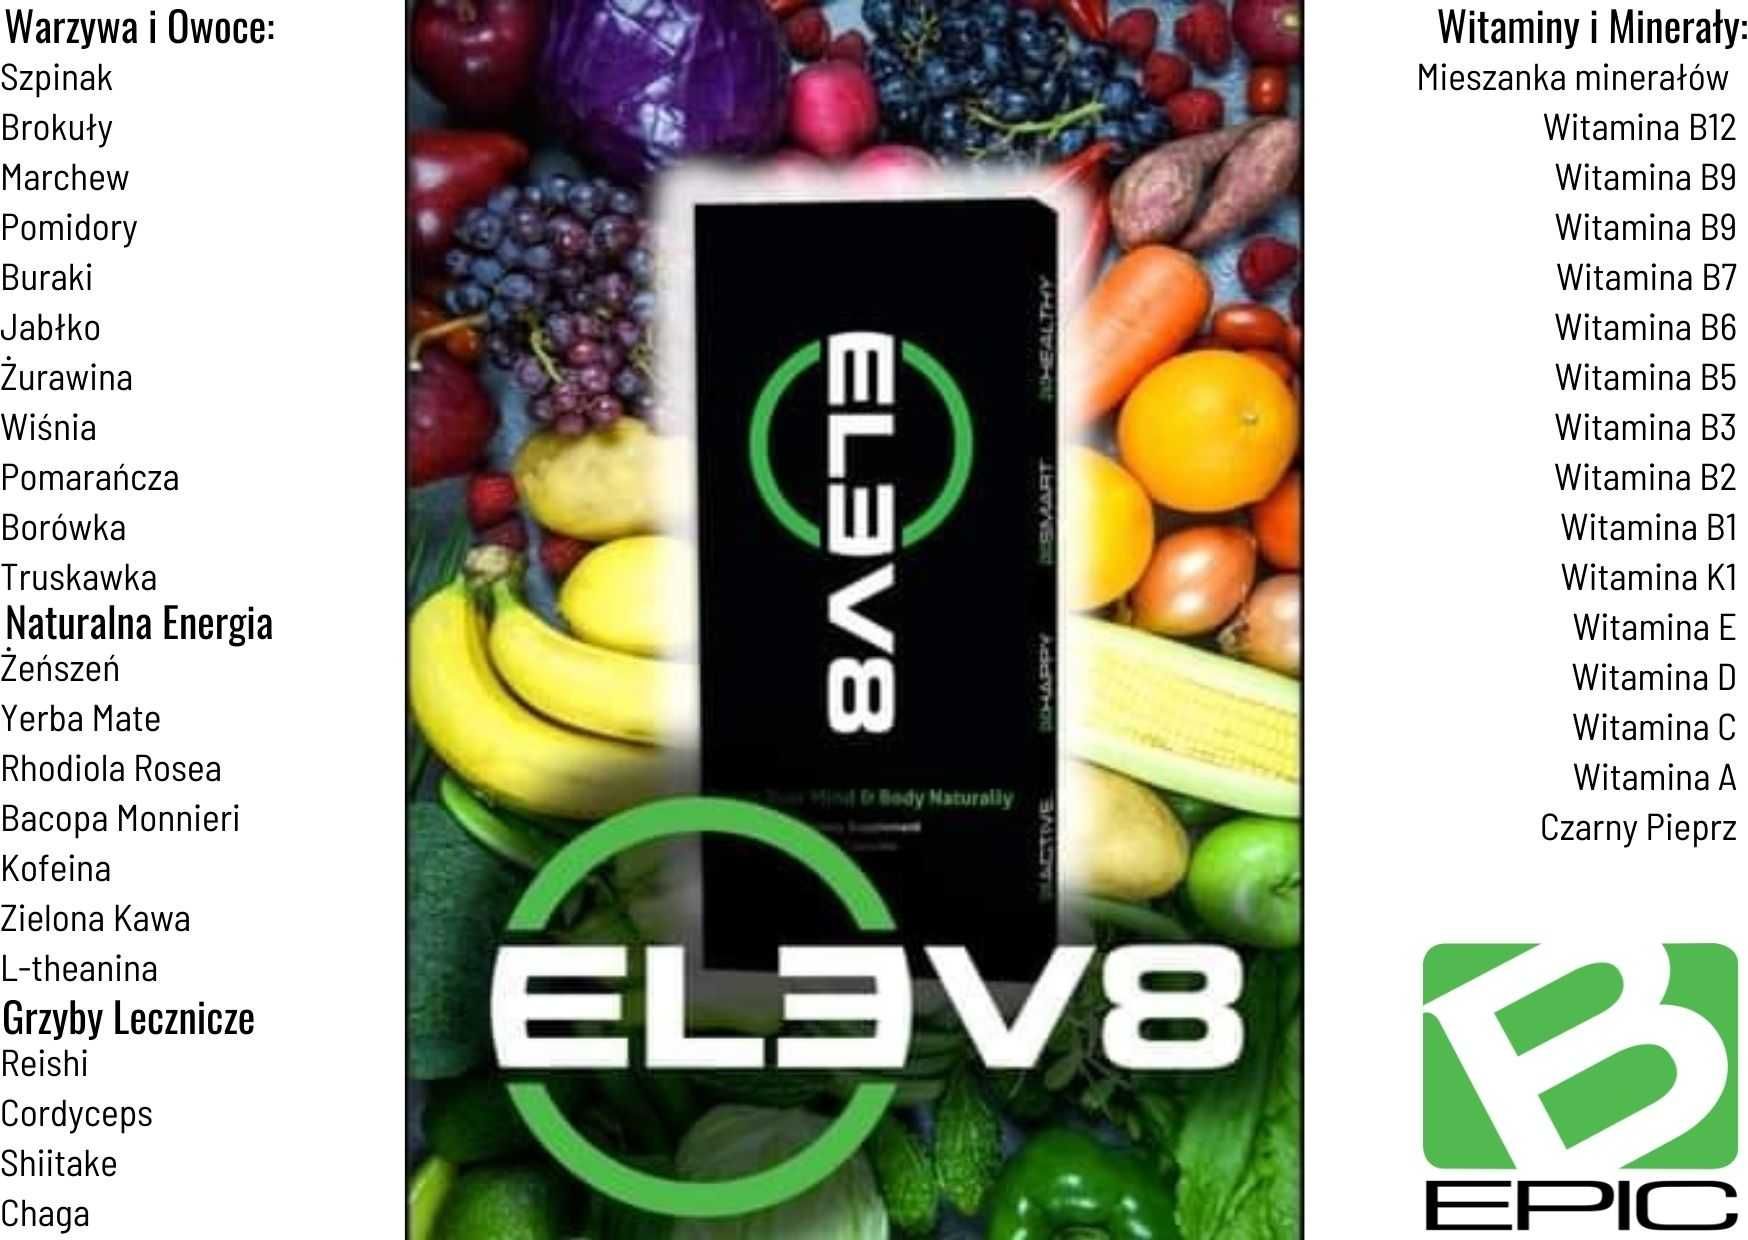 Elev8 - unikalny suplement na bazie ziół i grzybów leczniczych